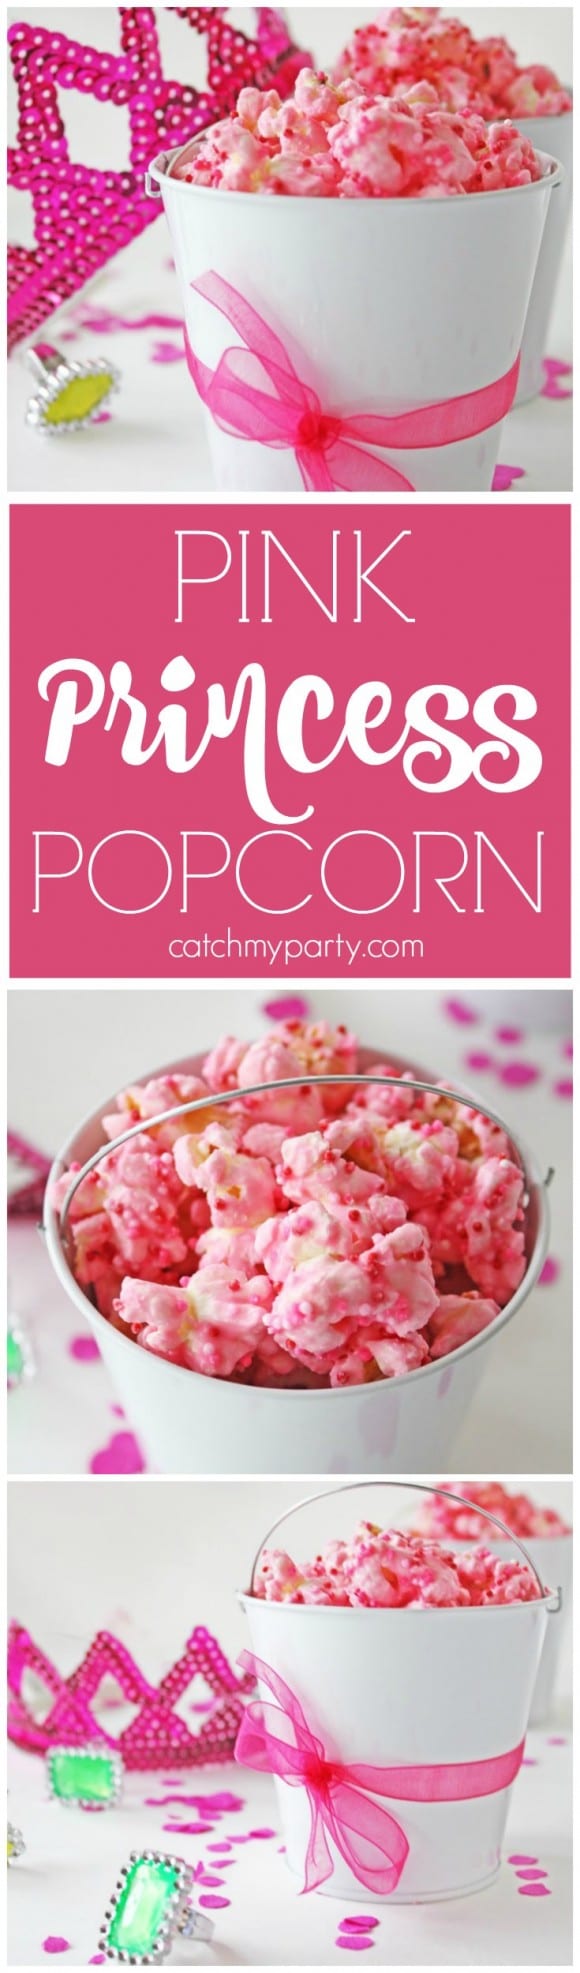 Pink princess popcorn | CatchMyParty.com